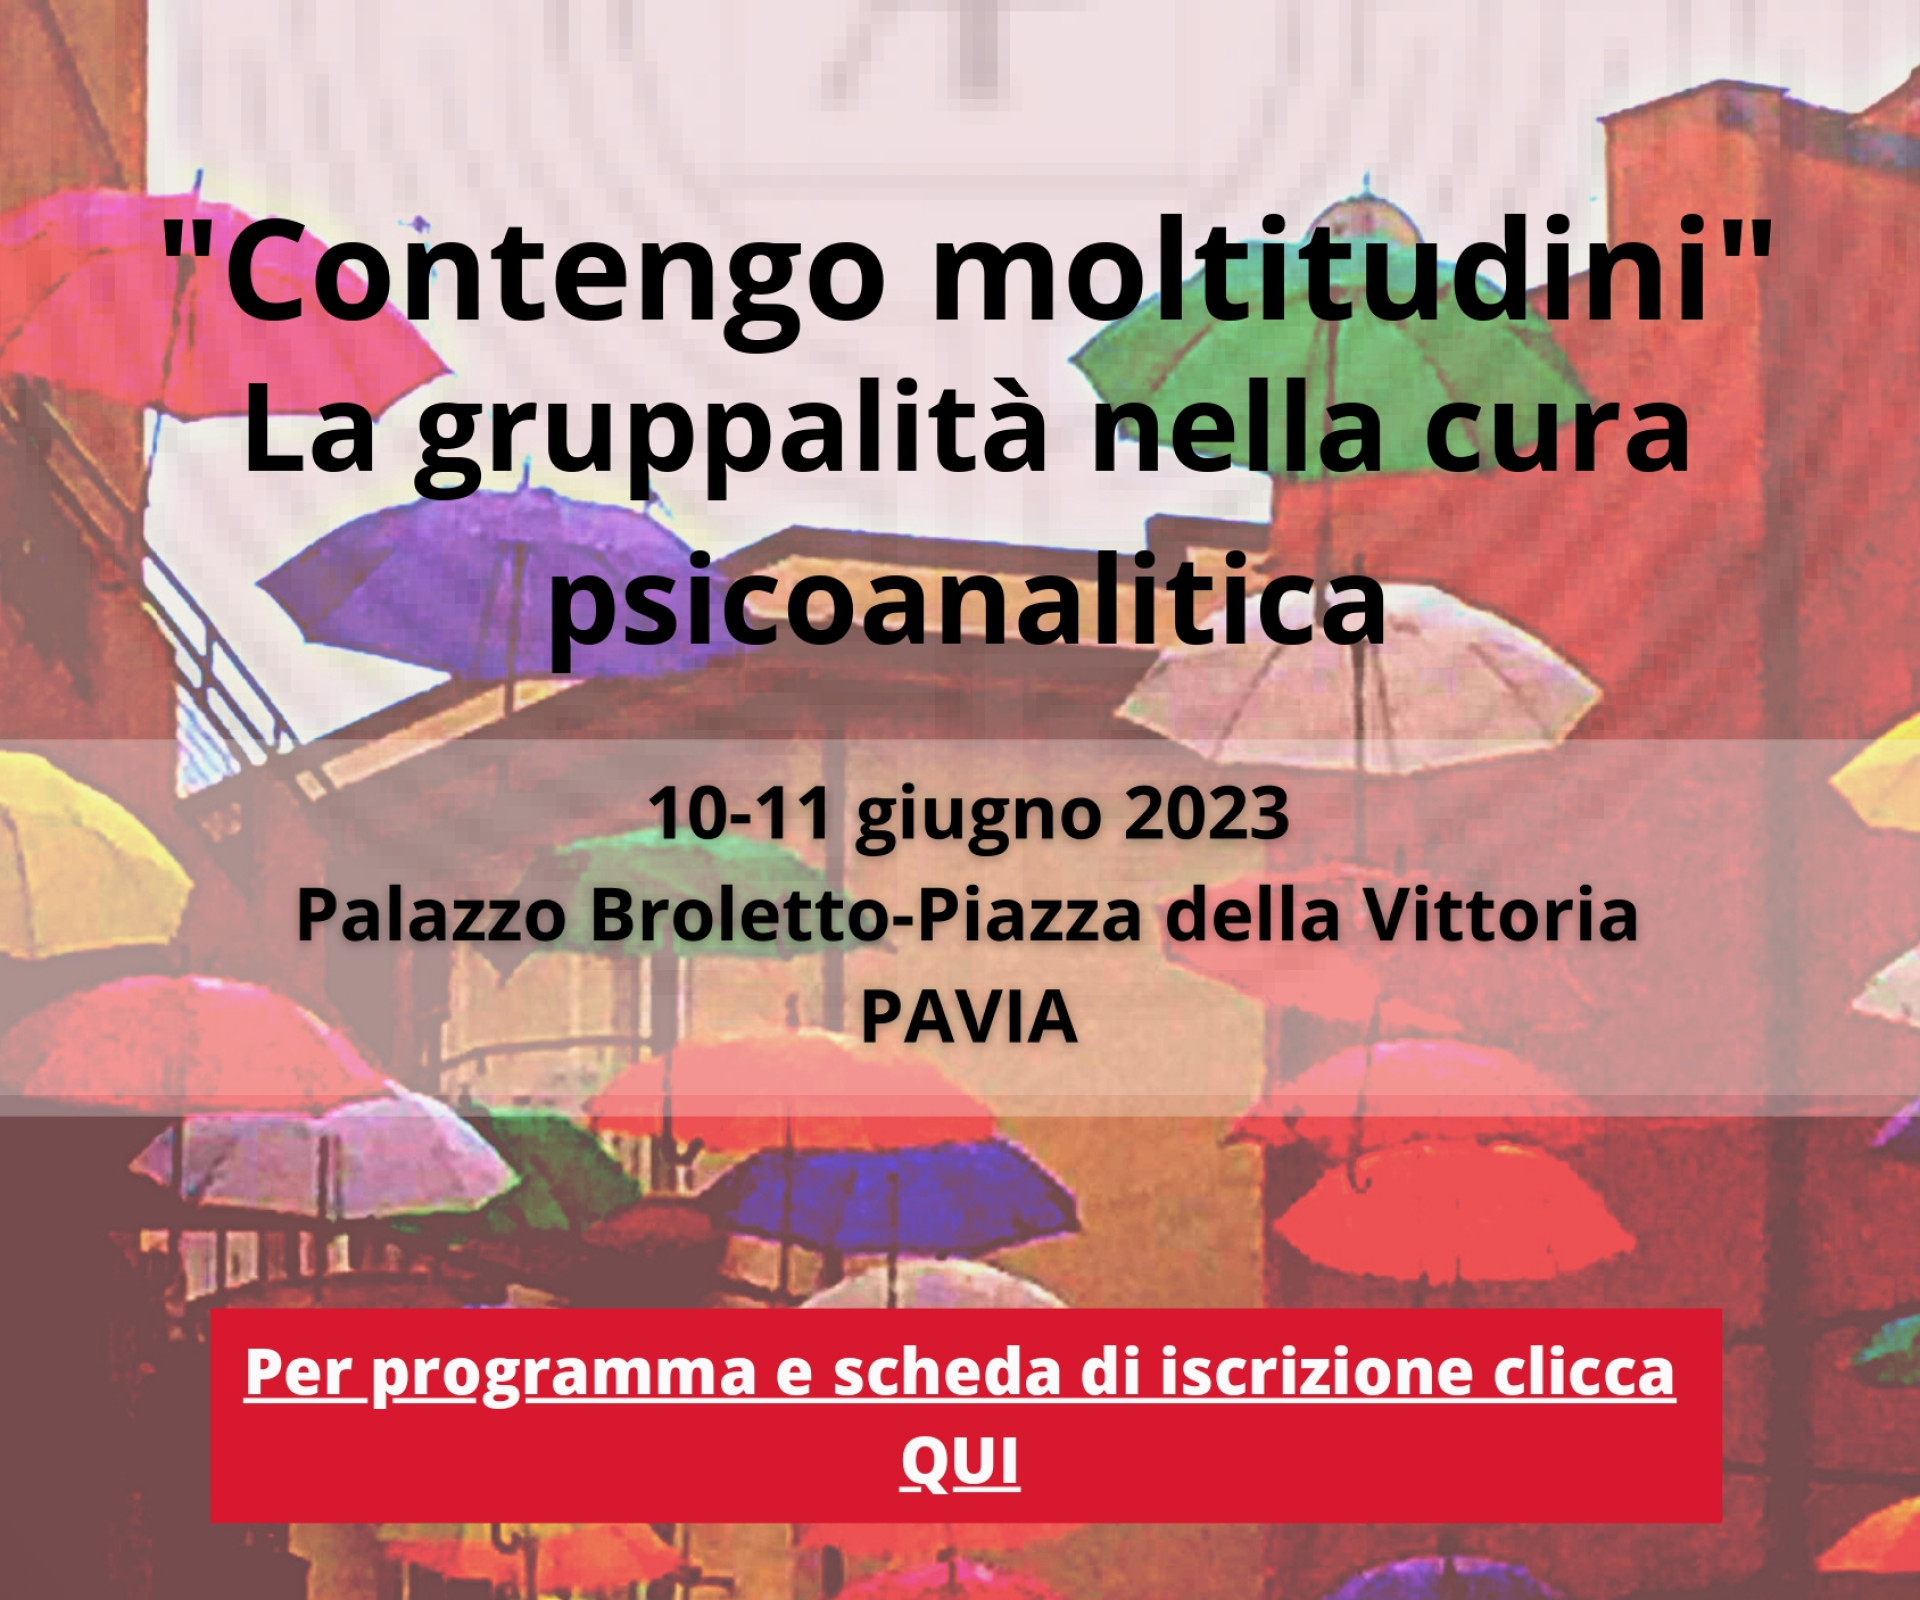 Centro Psicoanalitico di Pavia "Contengo Moltitudini". La gruppalità nella cura psicoanalitica.